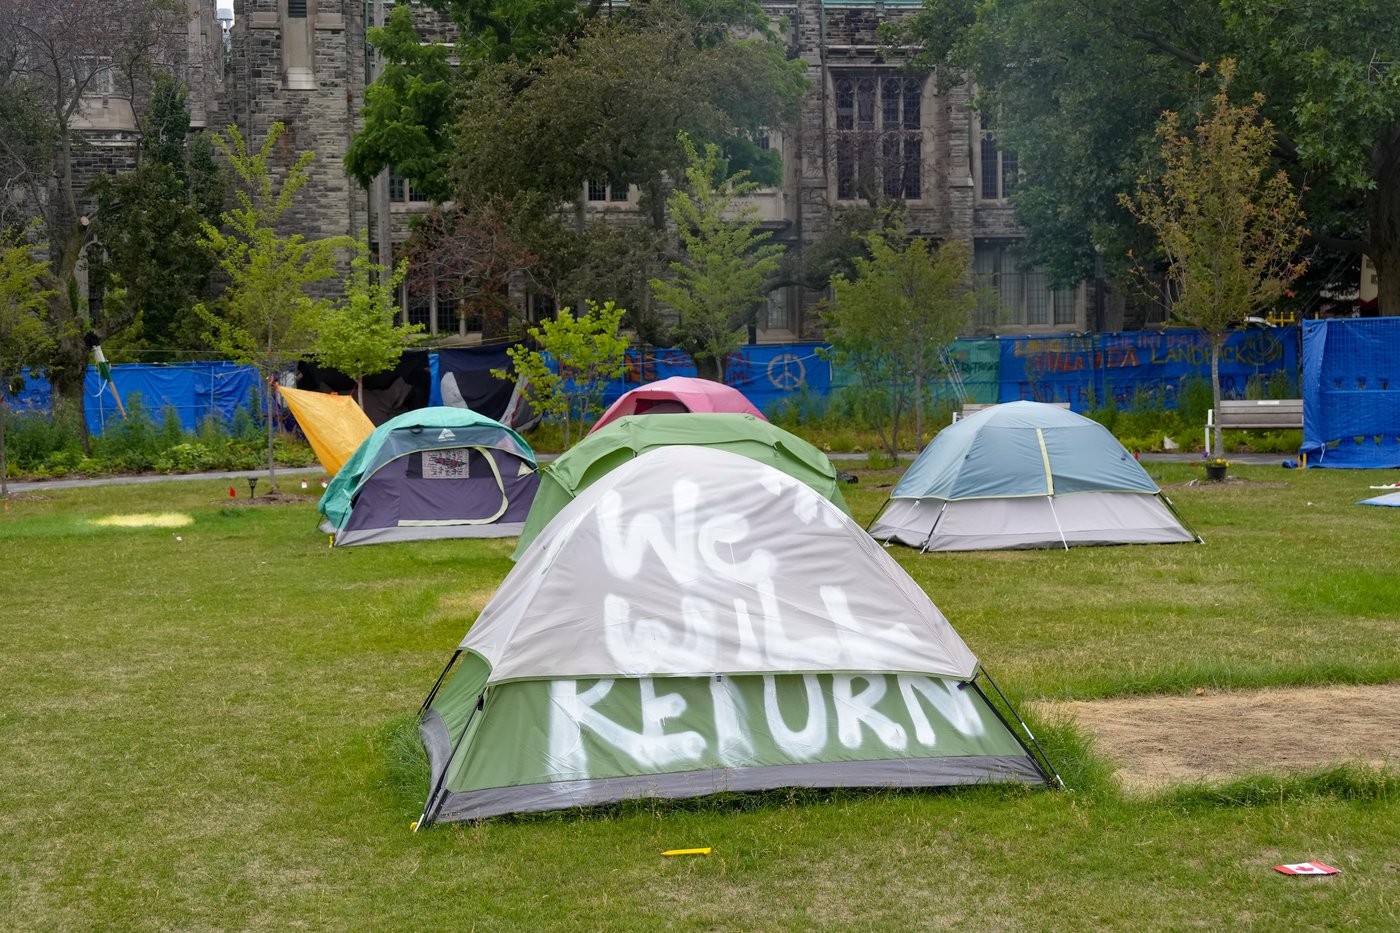 Les manifestants du campement à l’Université de Toronto s’engagent à quitter